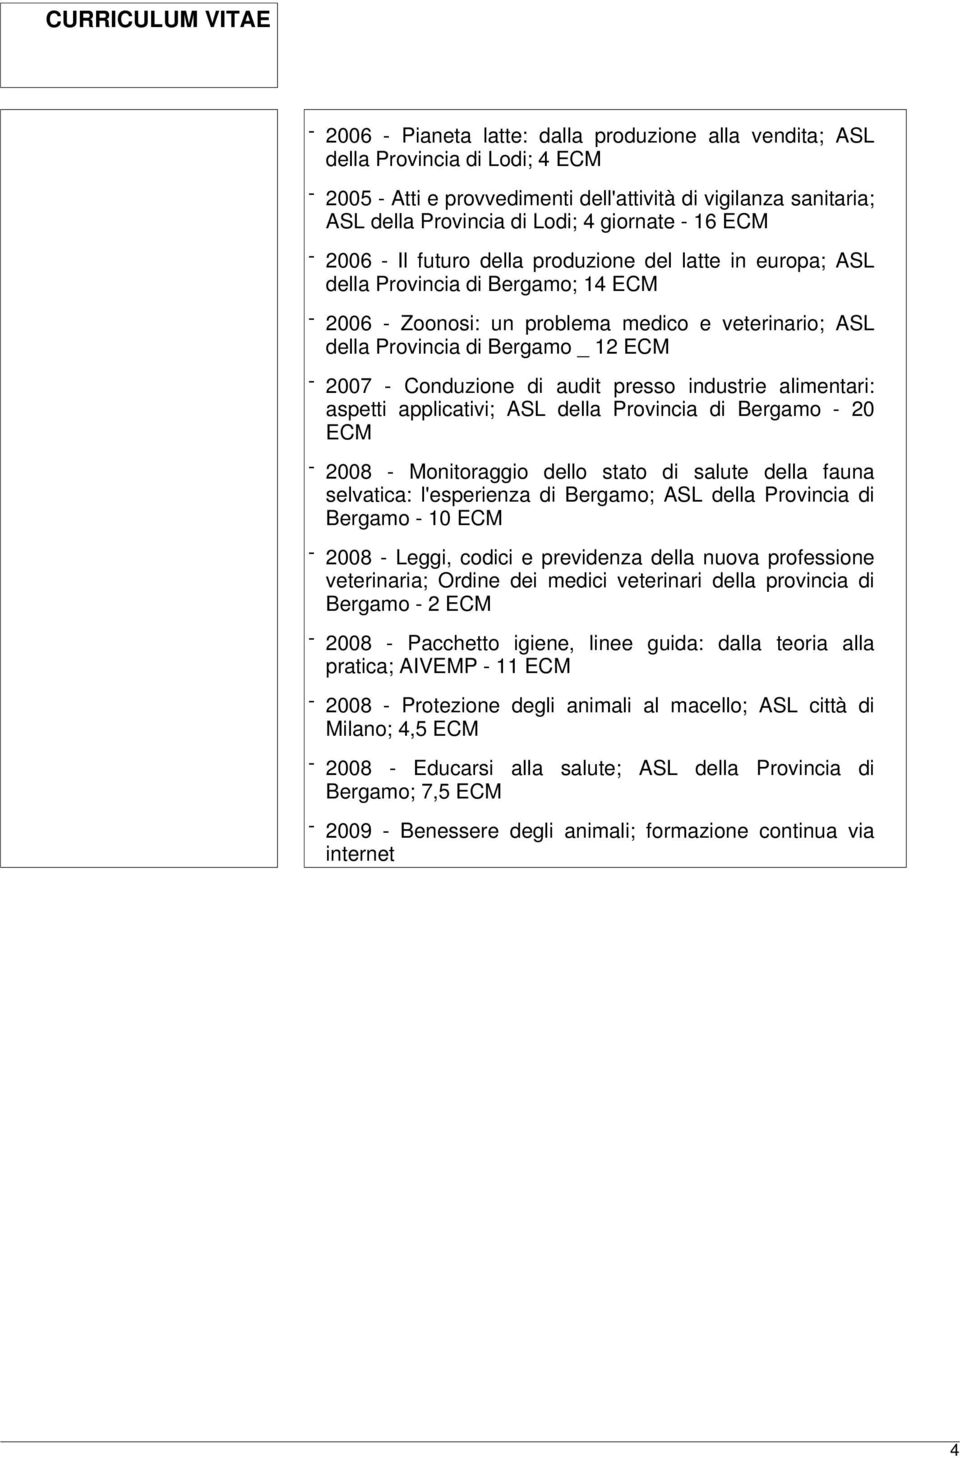 2007 - Conduzione di audit presso industrie alimentari: aspetti applicativi; ASL della Provincia di Bergamo - 20 ECM - 2008 - Monitoraggio dello stato di salute della fauna selvatica: l'esperienza di